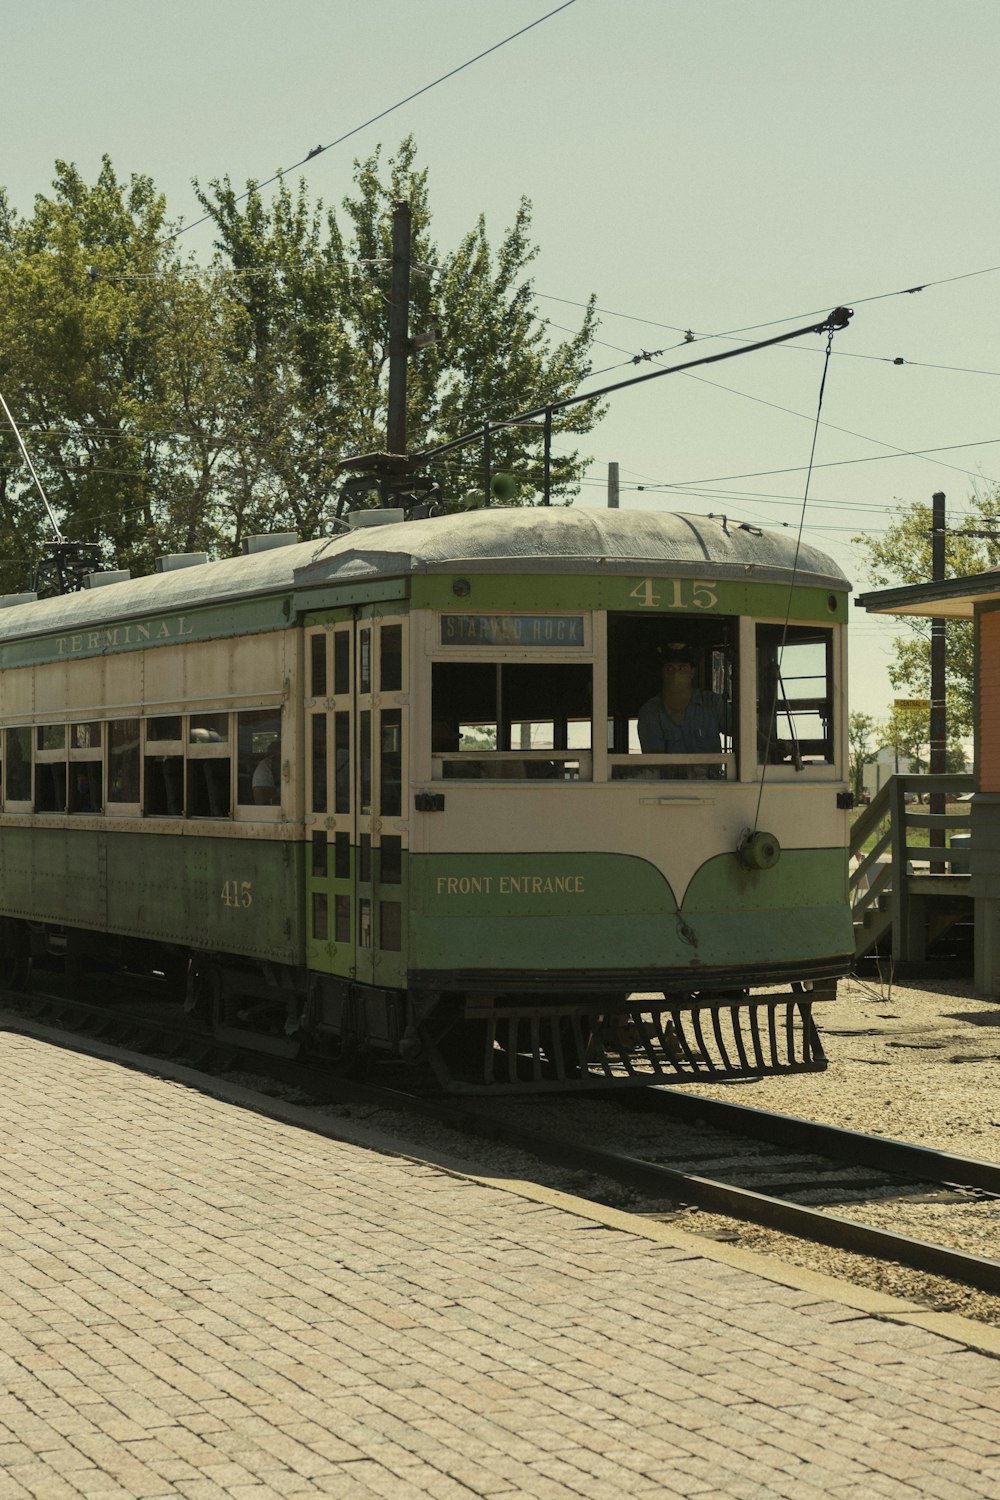 Weißer und grüner Zug auf Schienen